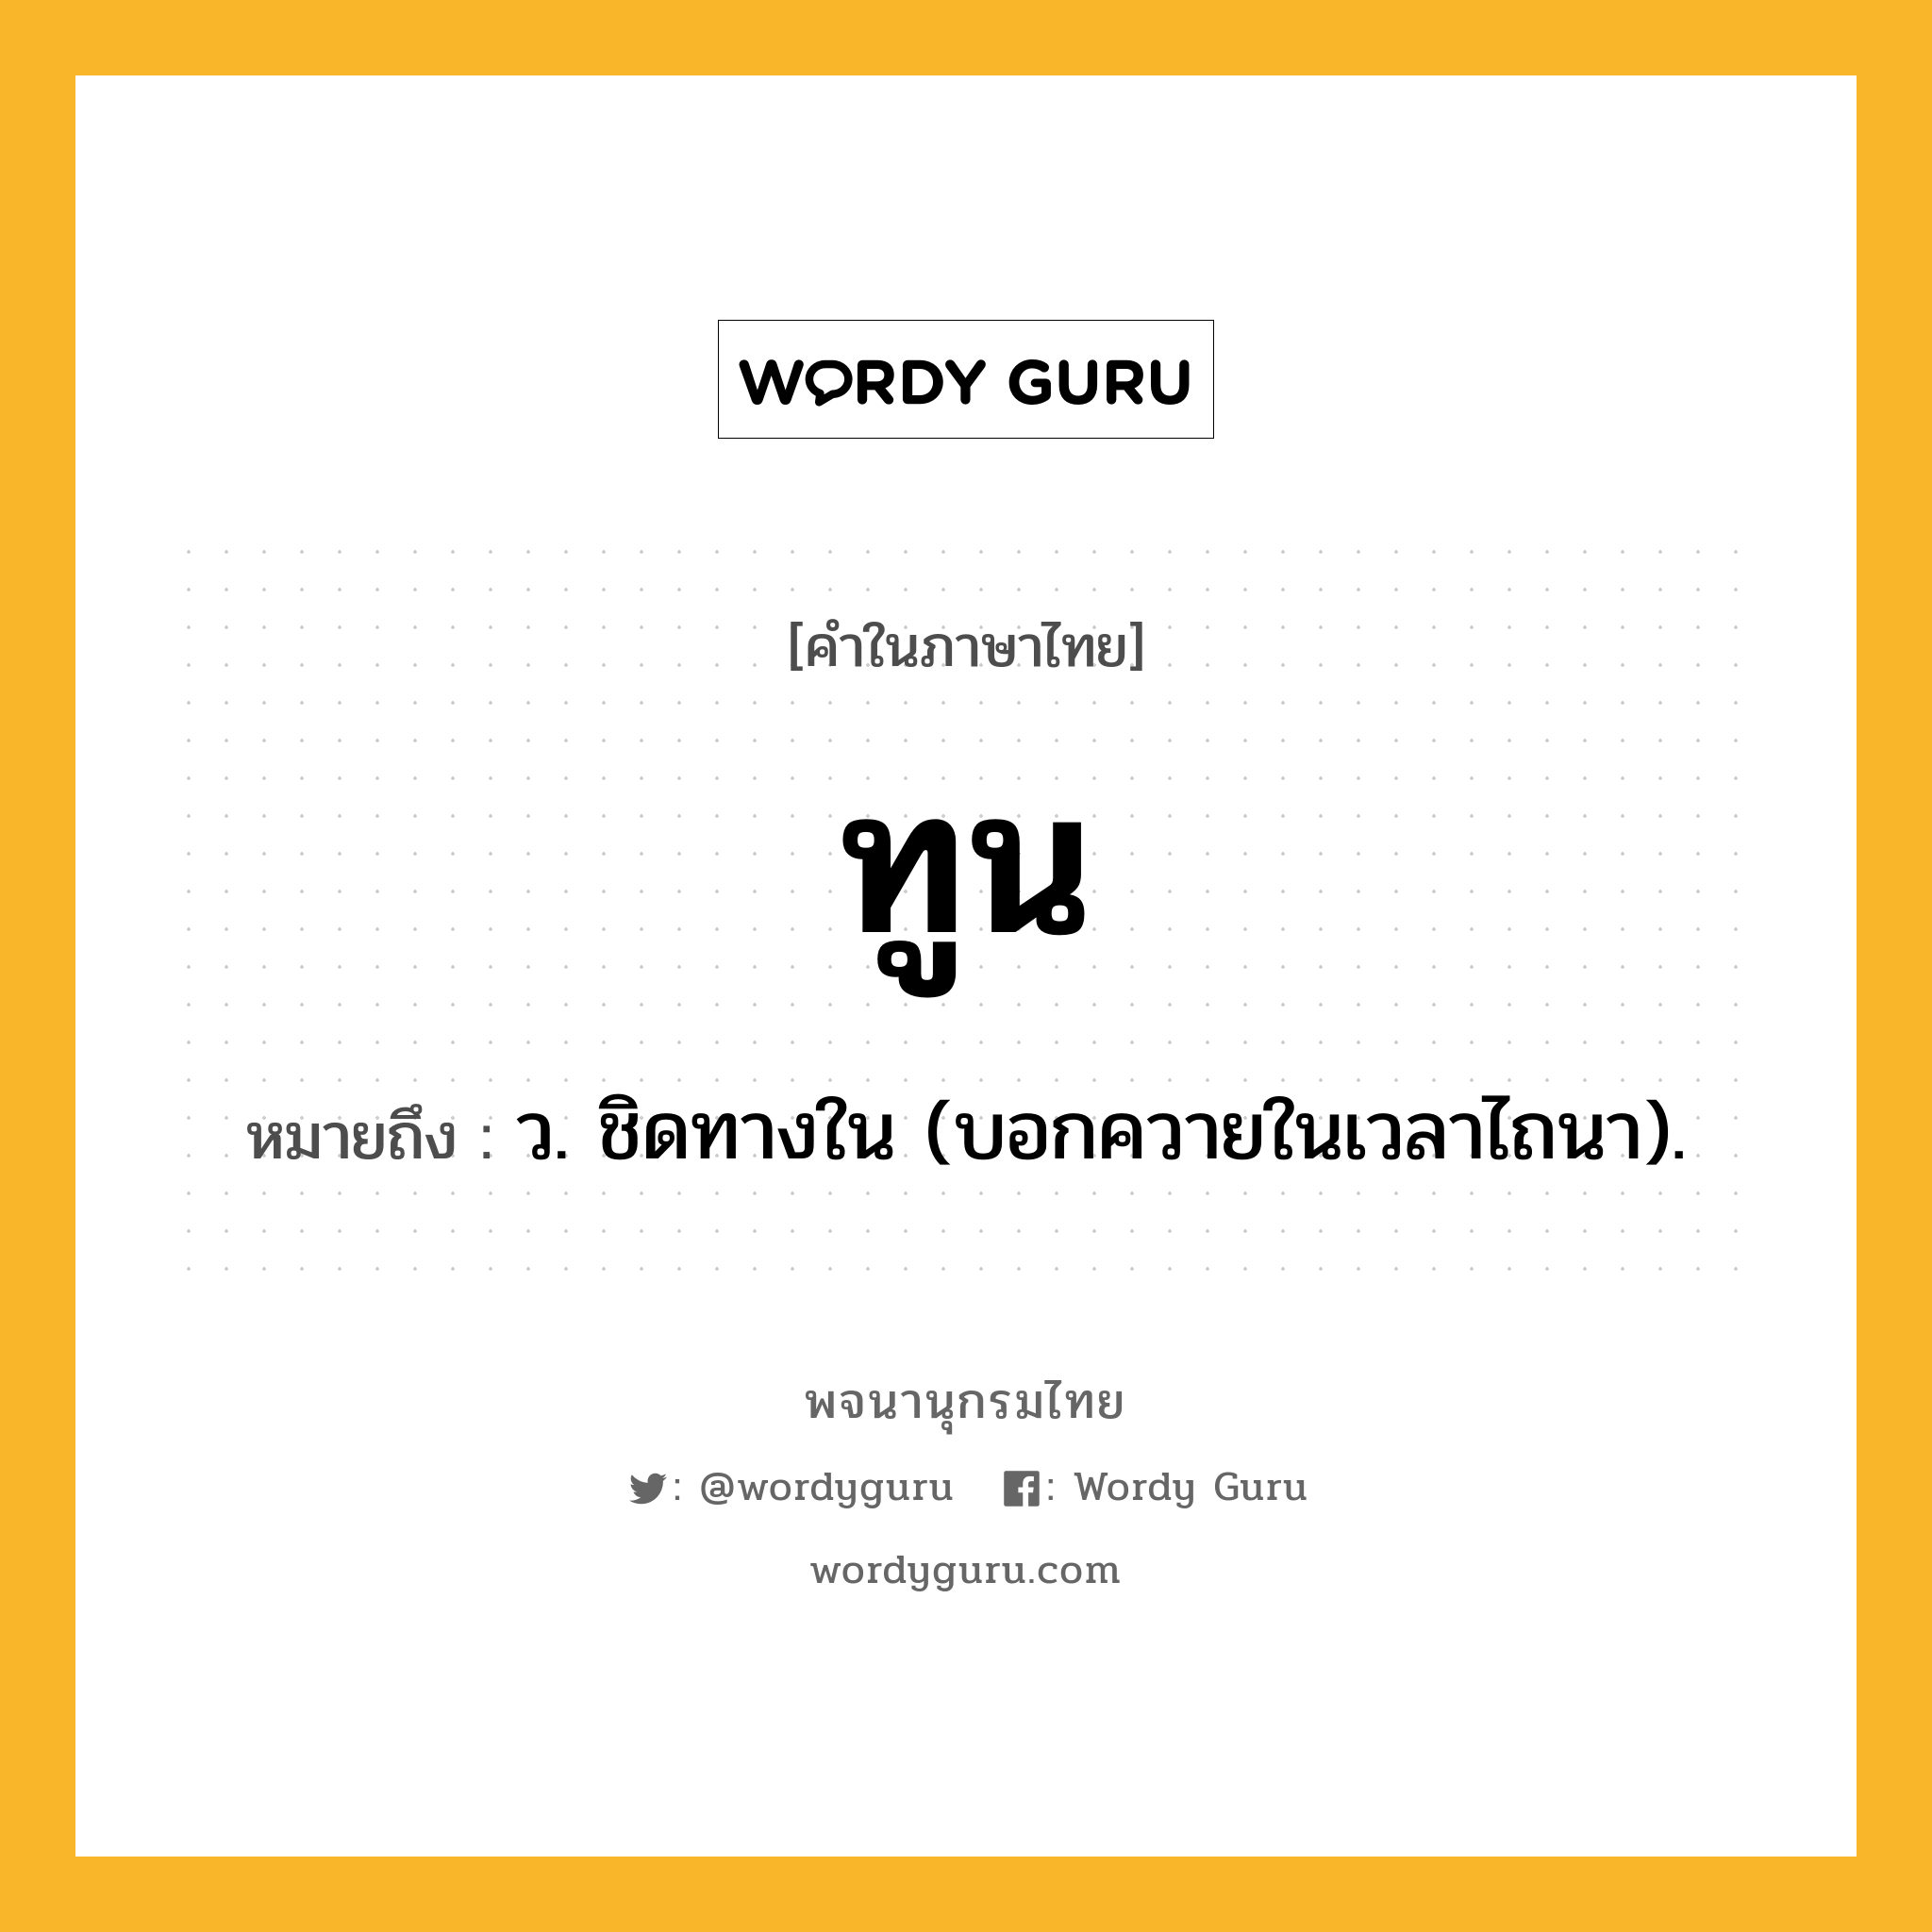 ทูน ความหมาย หมายถึงอะไร?, คำในภาษาไทย ทูน หมายถึง ว. ชิดทางใน (บอกควายในเวลาไถนา).